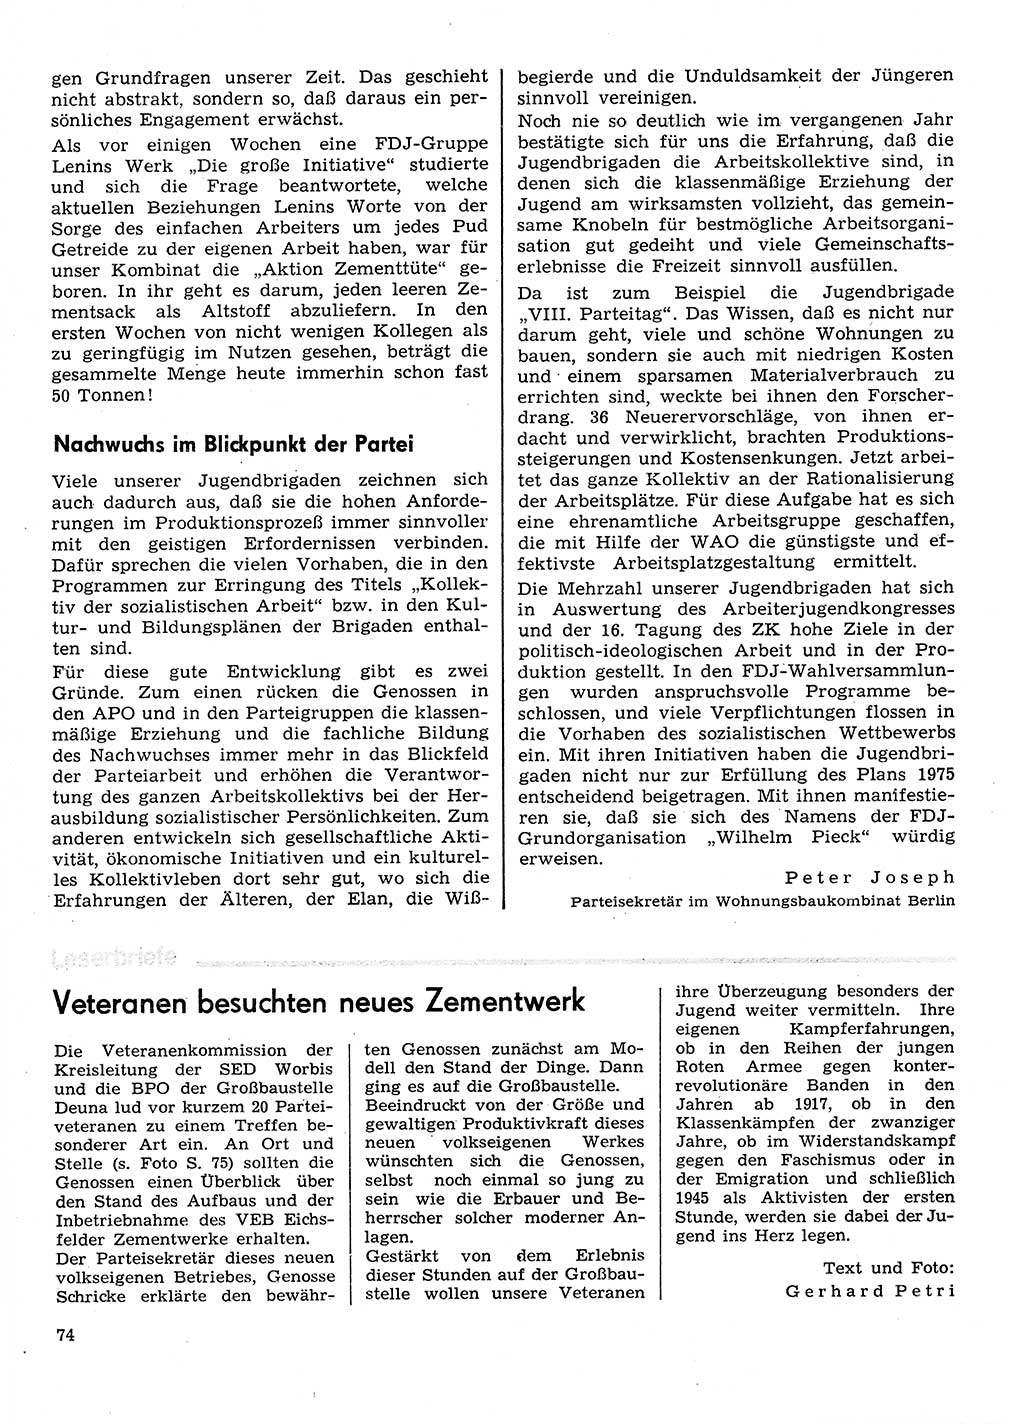 Neuer Weg (NW), Organ des Zentralkomitees (ZK) der SED (Sozialistische Einheitspartei Deutschlands) für Fragen des Parteilebens, 31. Jahrgang [Deutsche Demokratische Republik (DDR)] 1976, Seite 74 (NW ZK SED DDR 1976, S. 74)